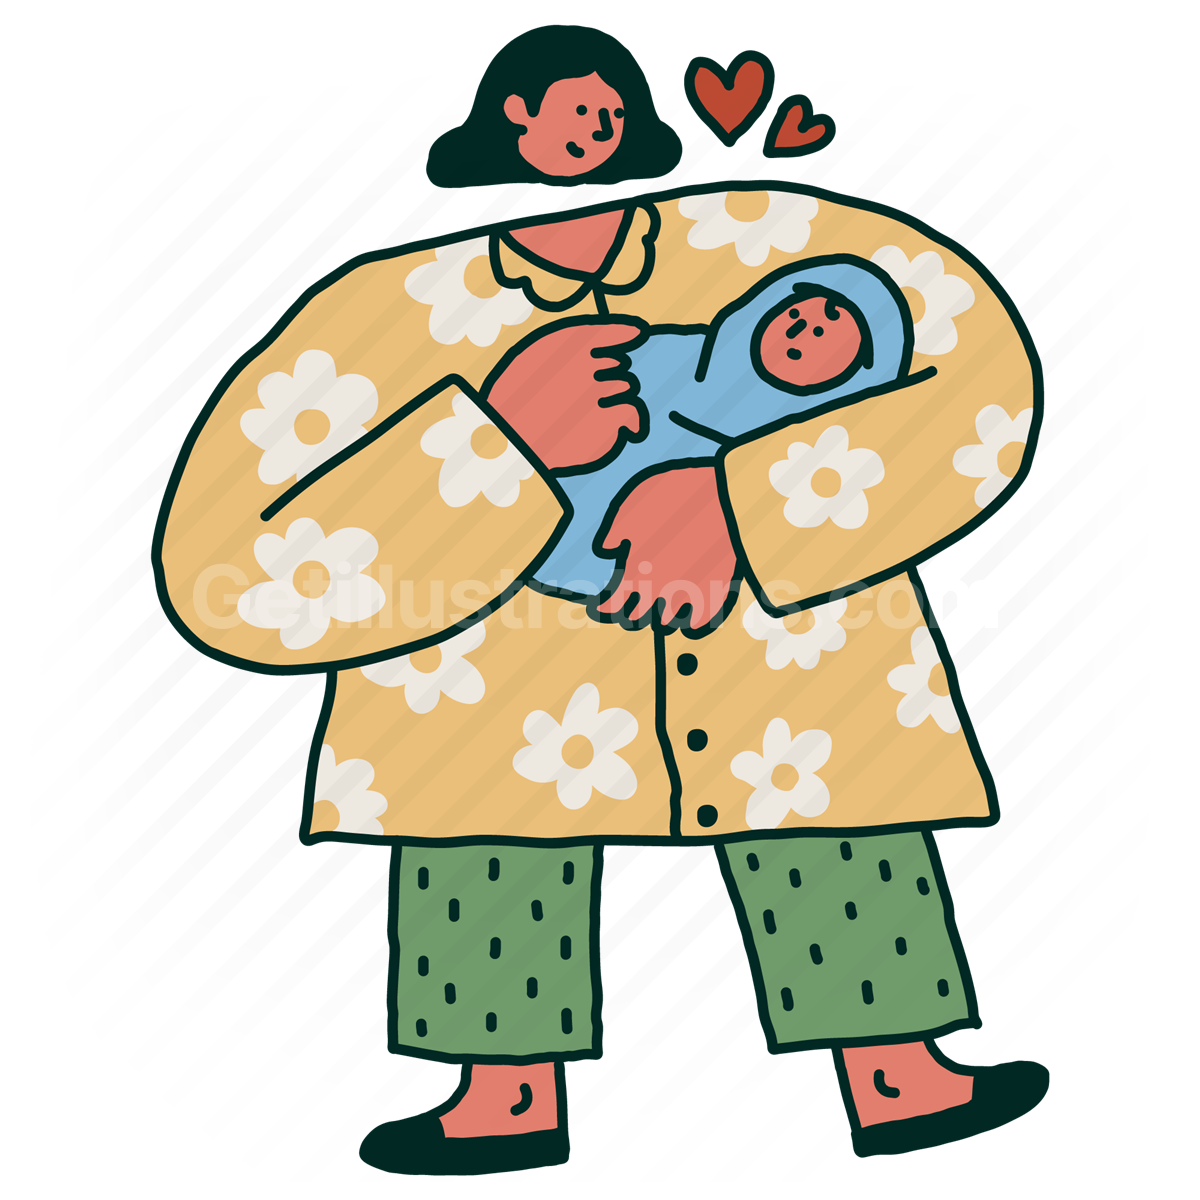 Family and Children illustration